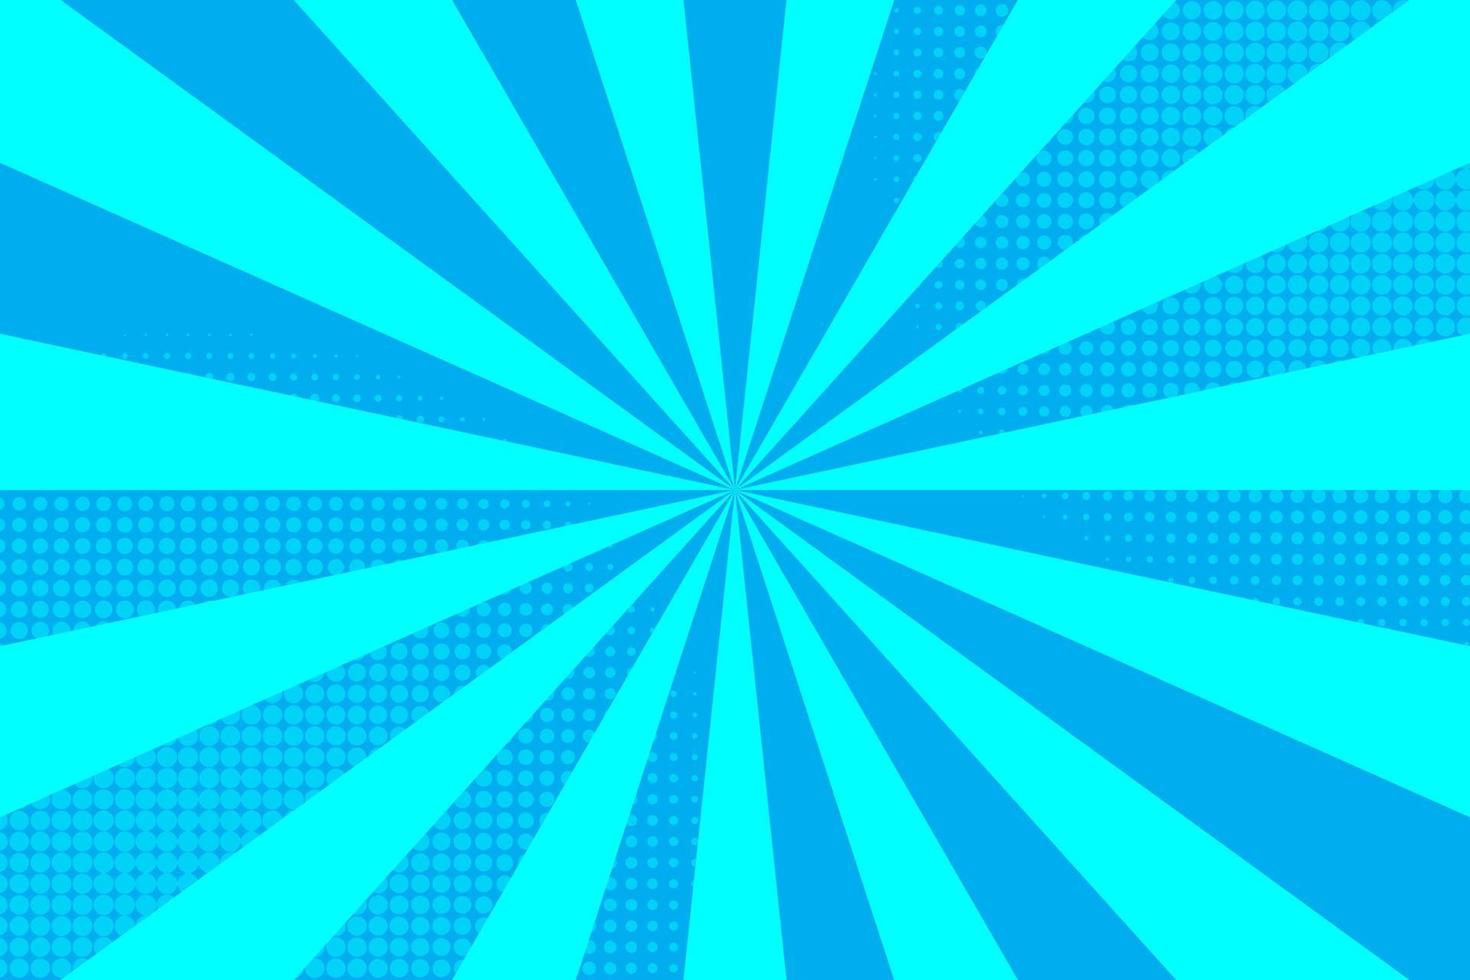 fondo de estilo cómico azul plano con trama de semitonos vector